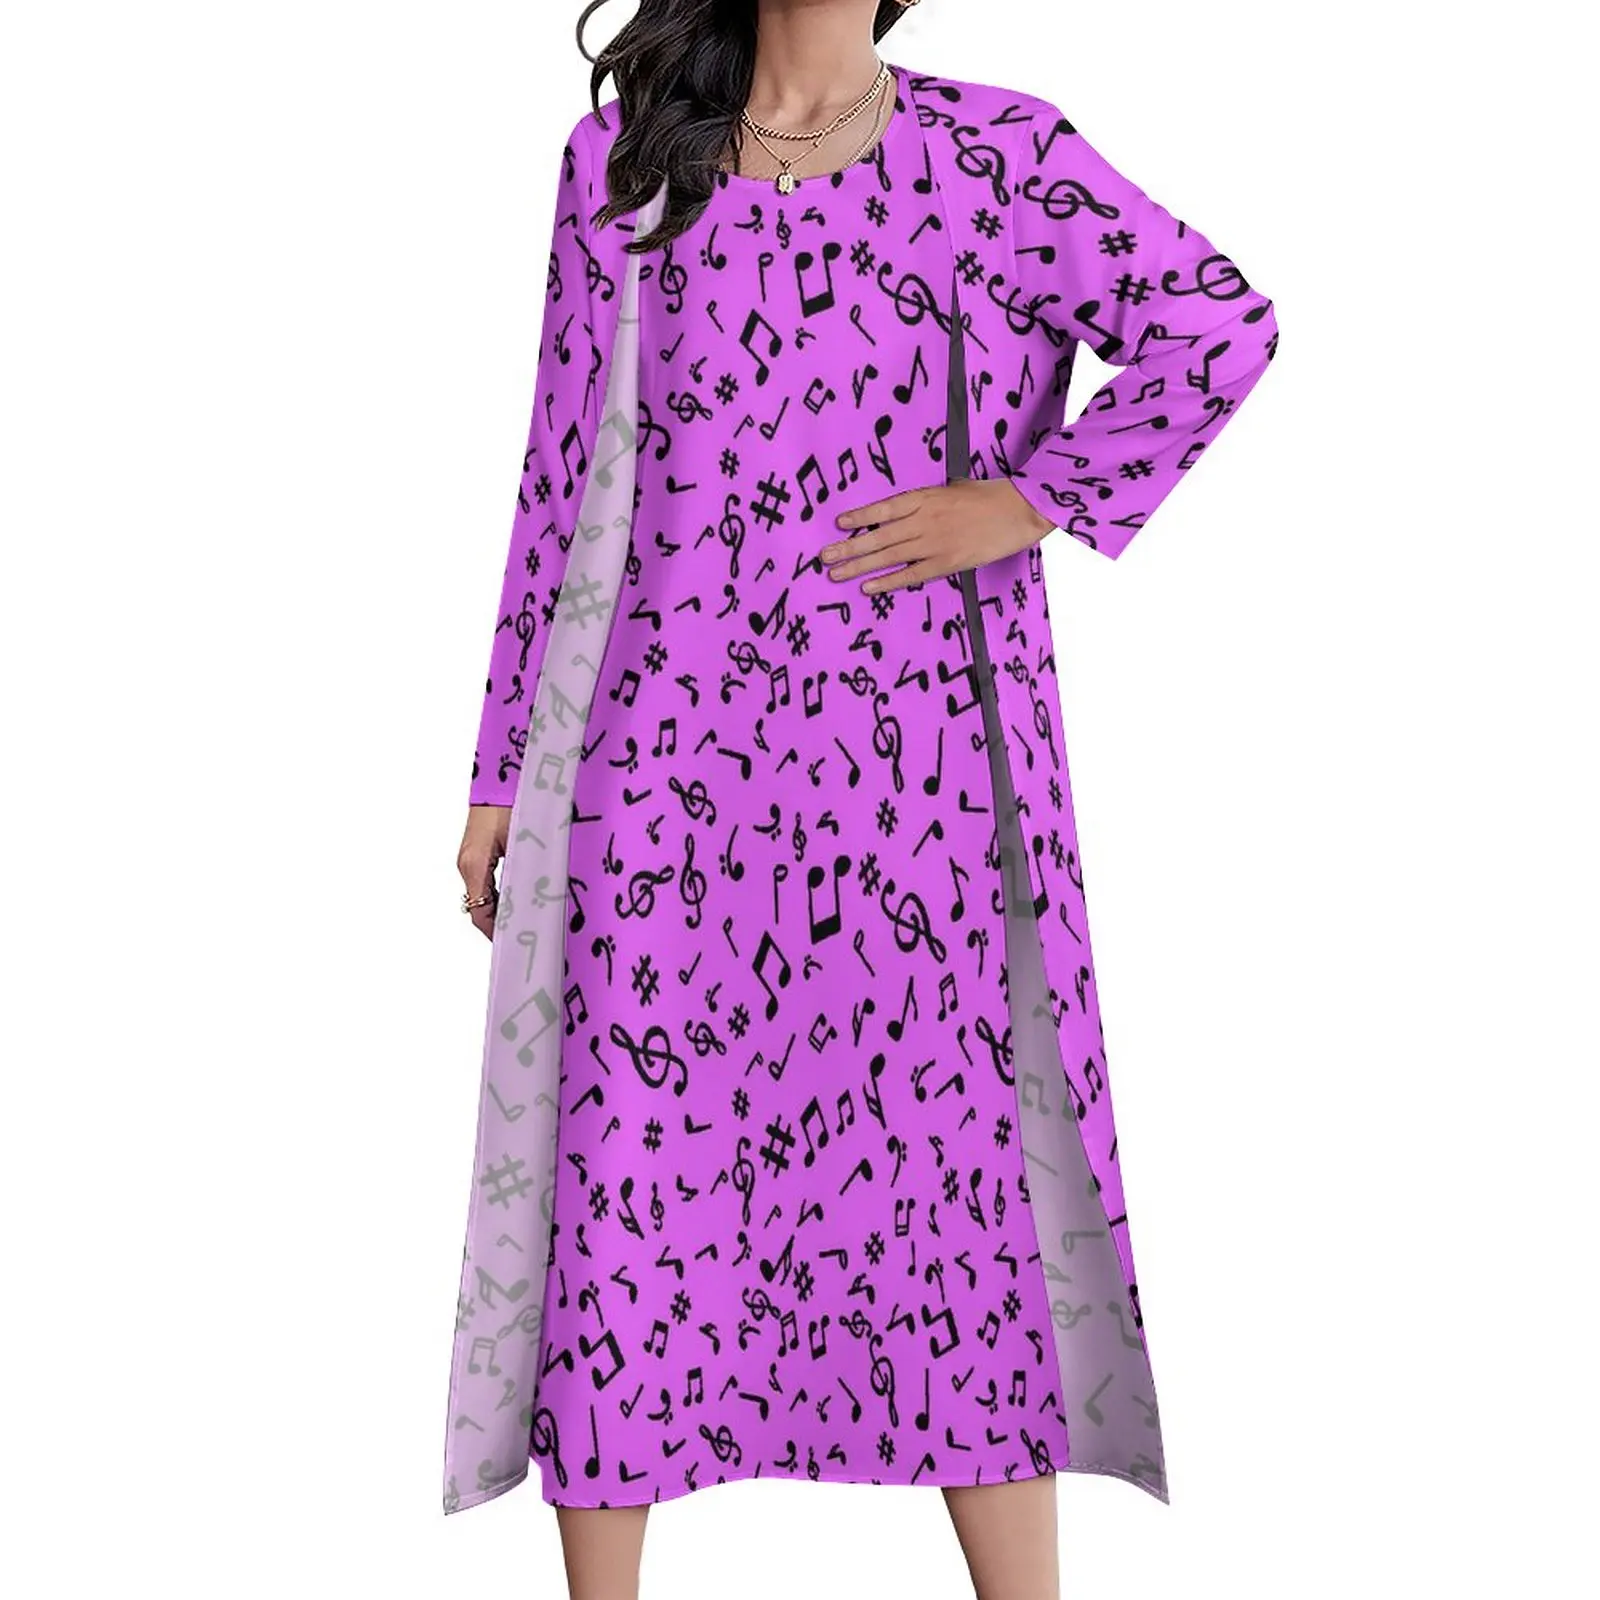 

Платье-макси в стиле бохо женское, длинное пляжное платье с принтом музыкальных заметок, уличная мода, фиолетовый и черный цвета, современное, большие размеры 4XL, на весну